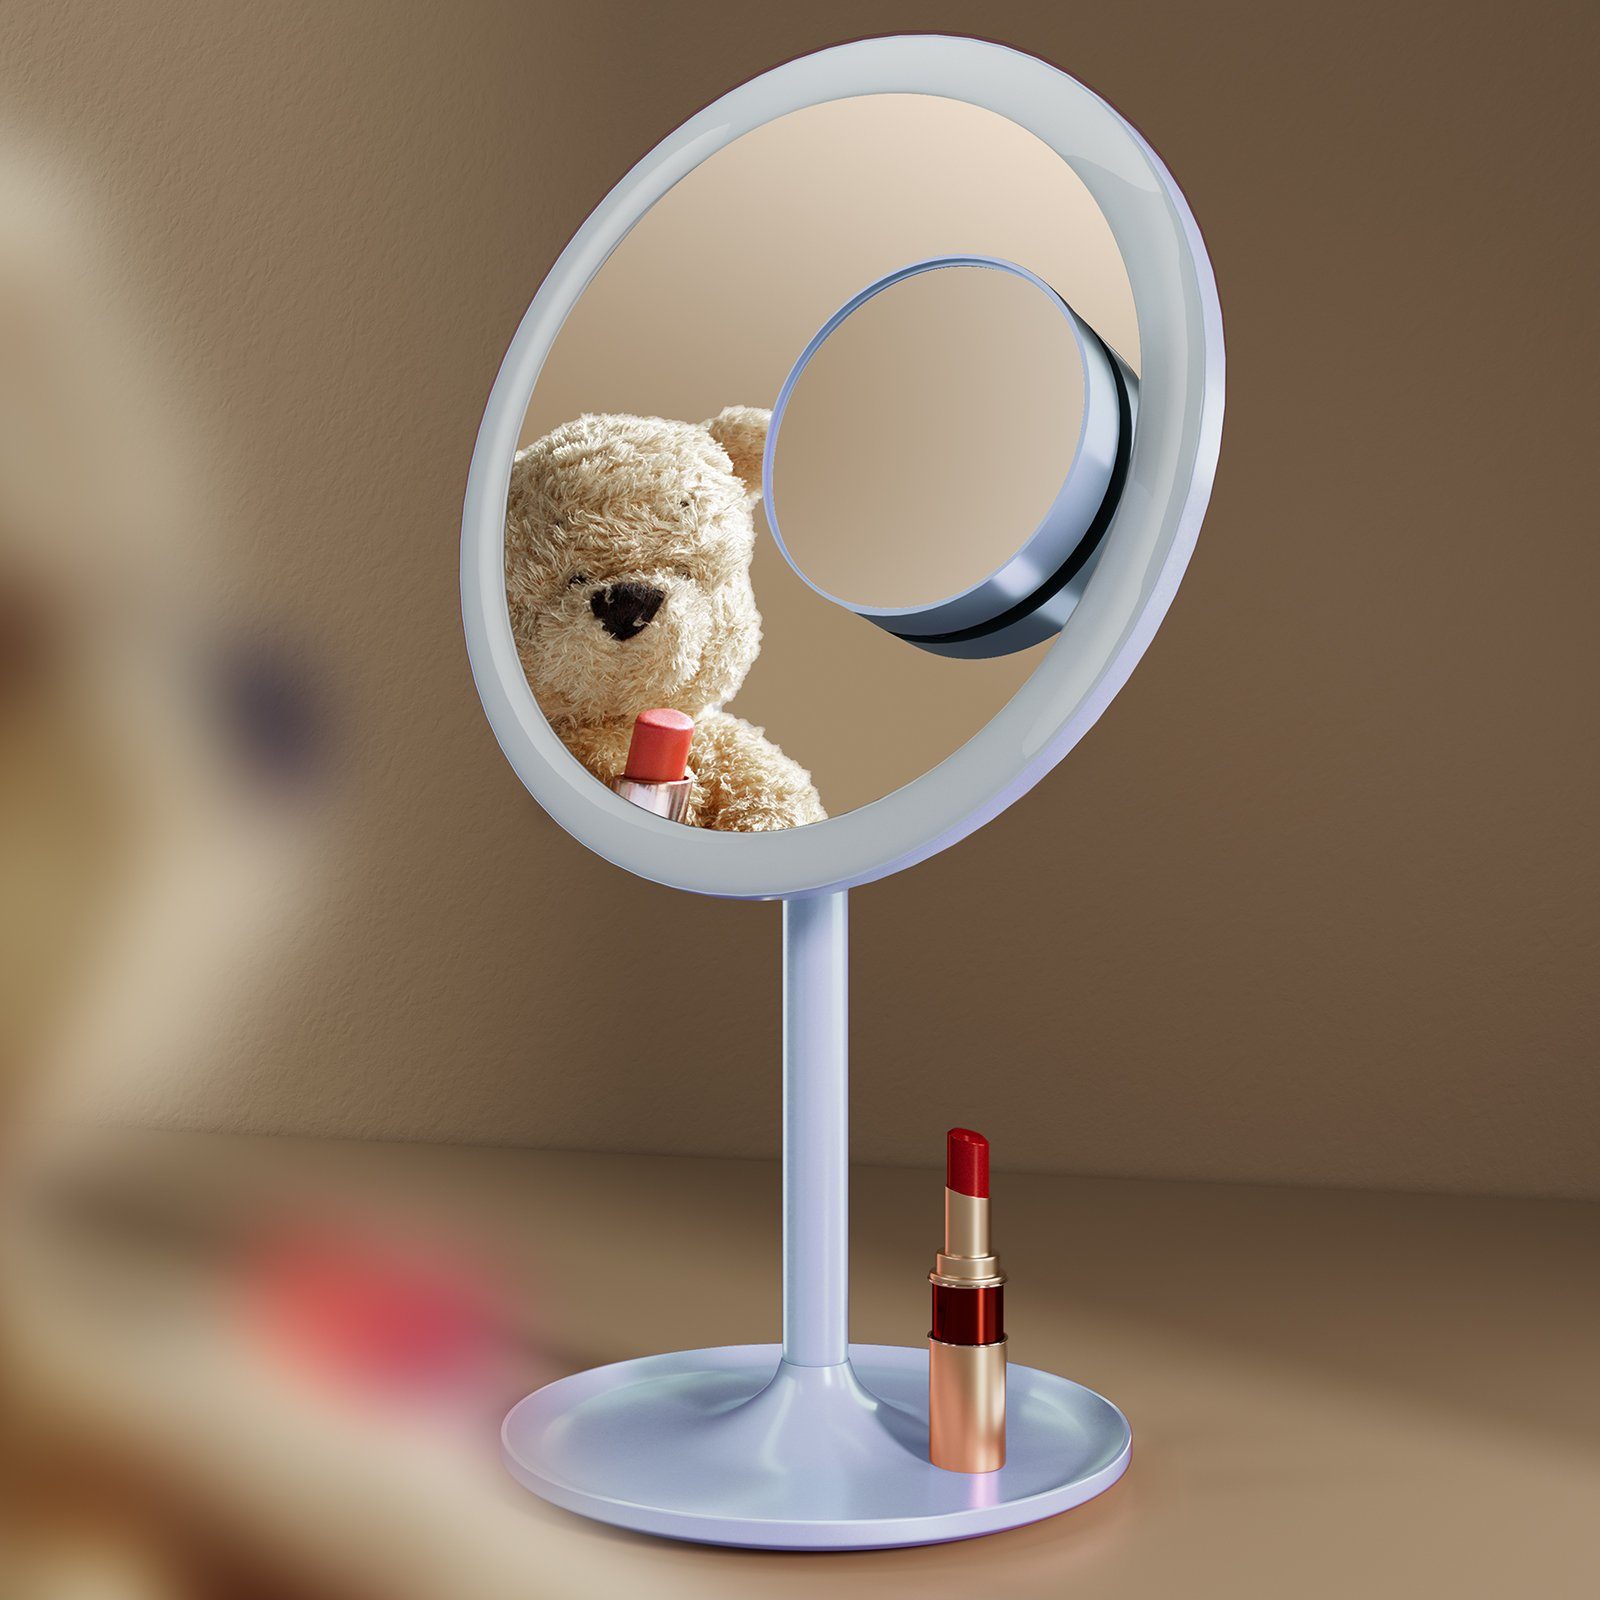 EMKE Kosmetikspiegel Macaron mit für Schminken Dimmbar, Hellblau Tischspiegel Schminkspiegel 3X,90°Drehbar,USB 1X 3 LED Lichtfarben Aufladbarer / Beleuchtung